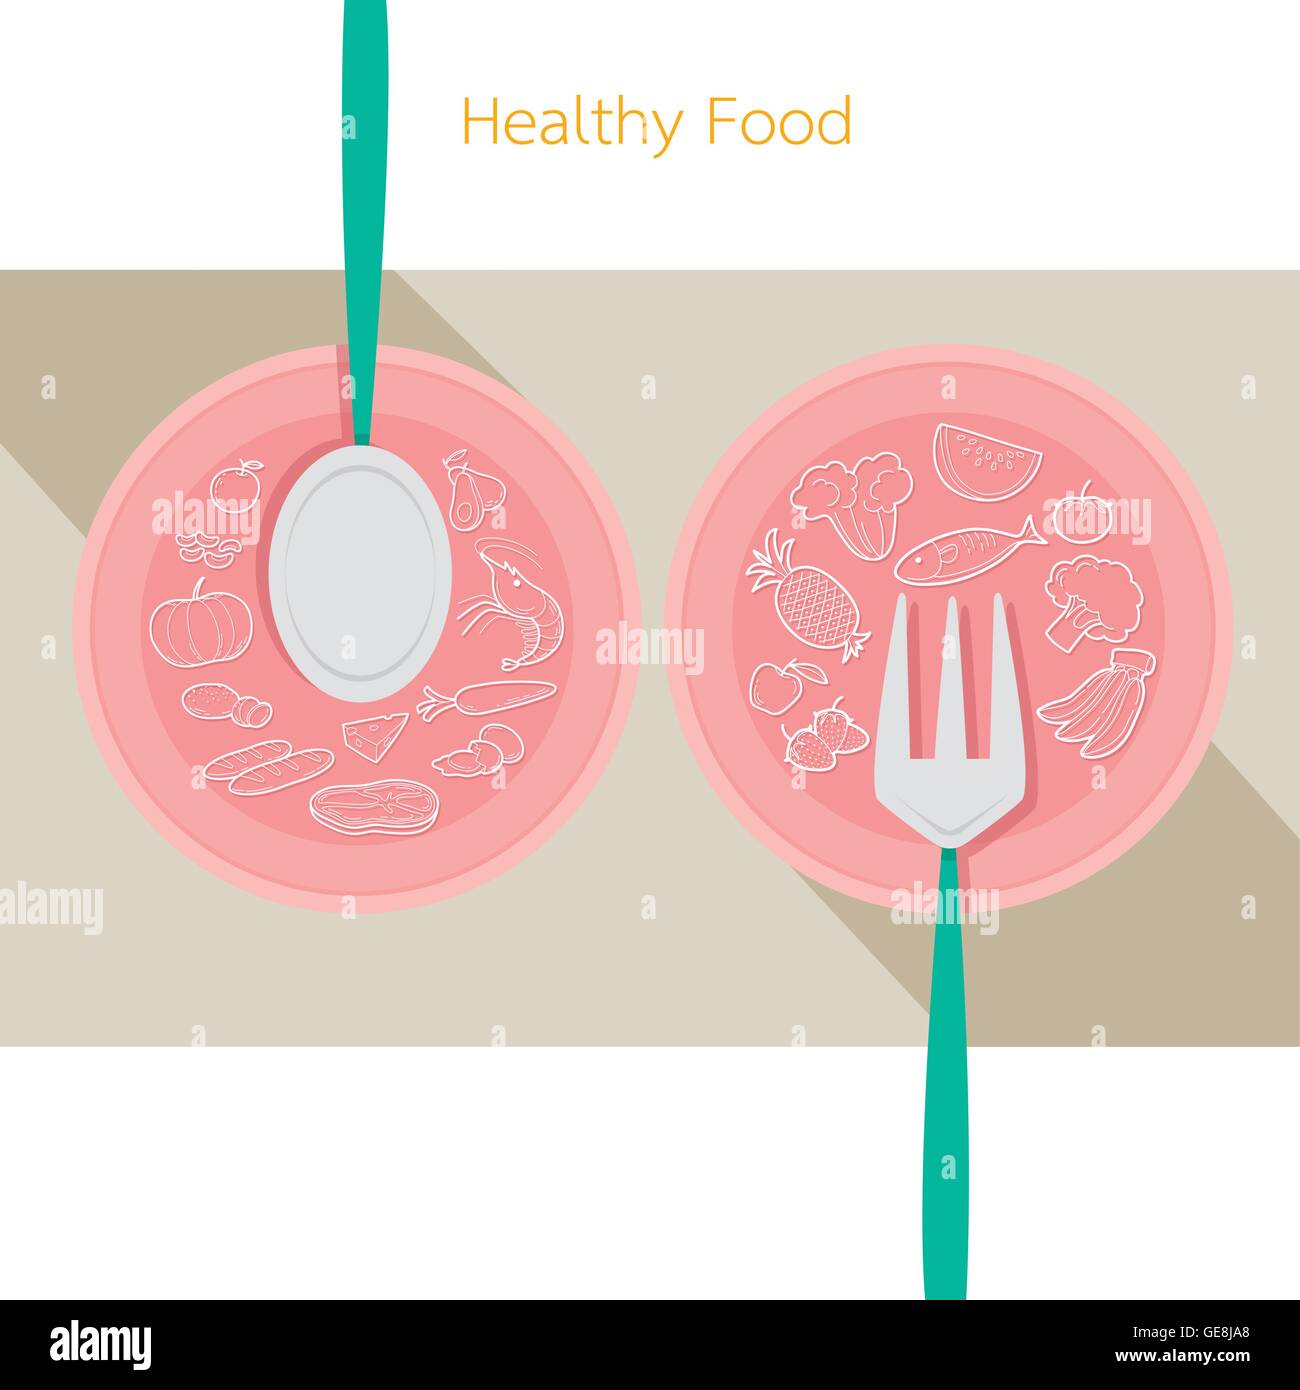 Food icons set linéaire sur plat d'une cuillère et fourchette, santé, bio, la nutrition, la médecine, la santé mentale et physique, catégorie Illustration de Vecteur